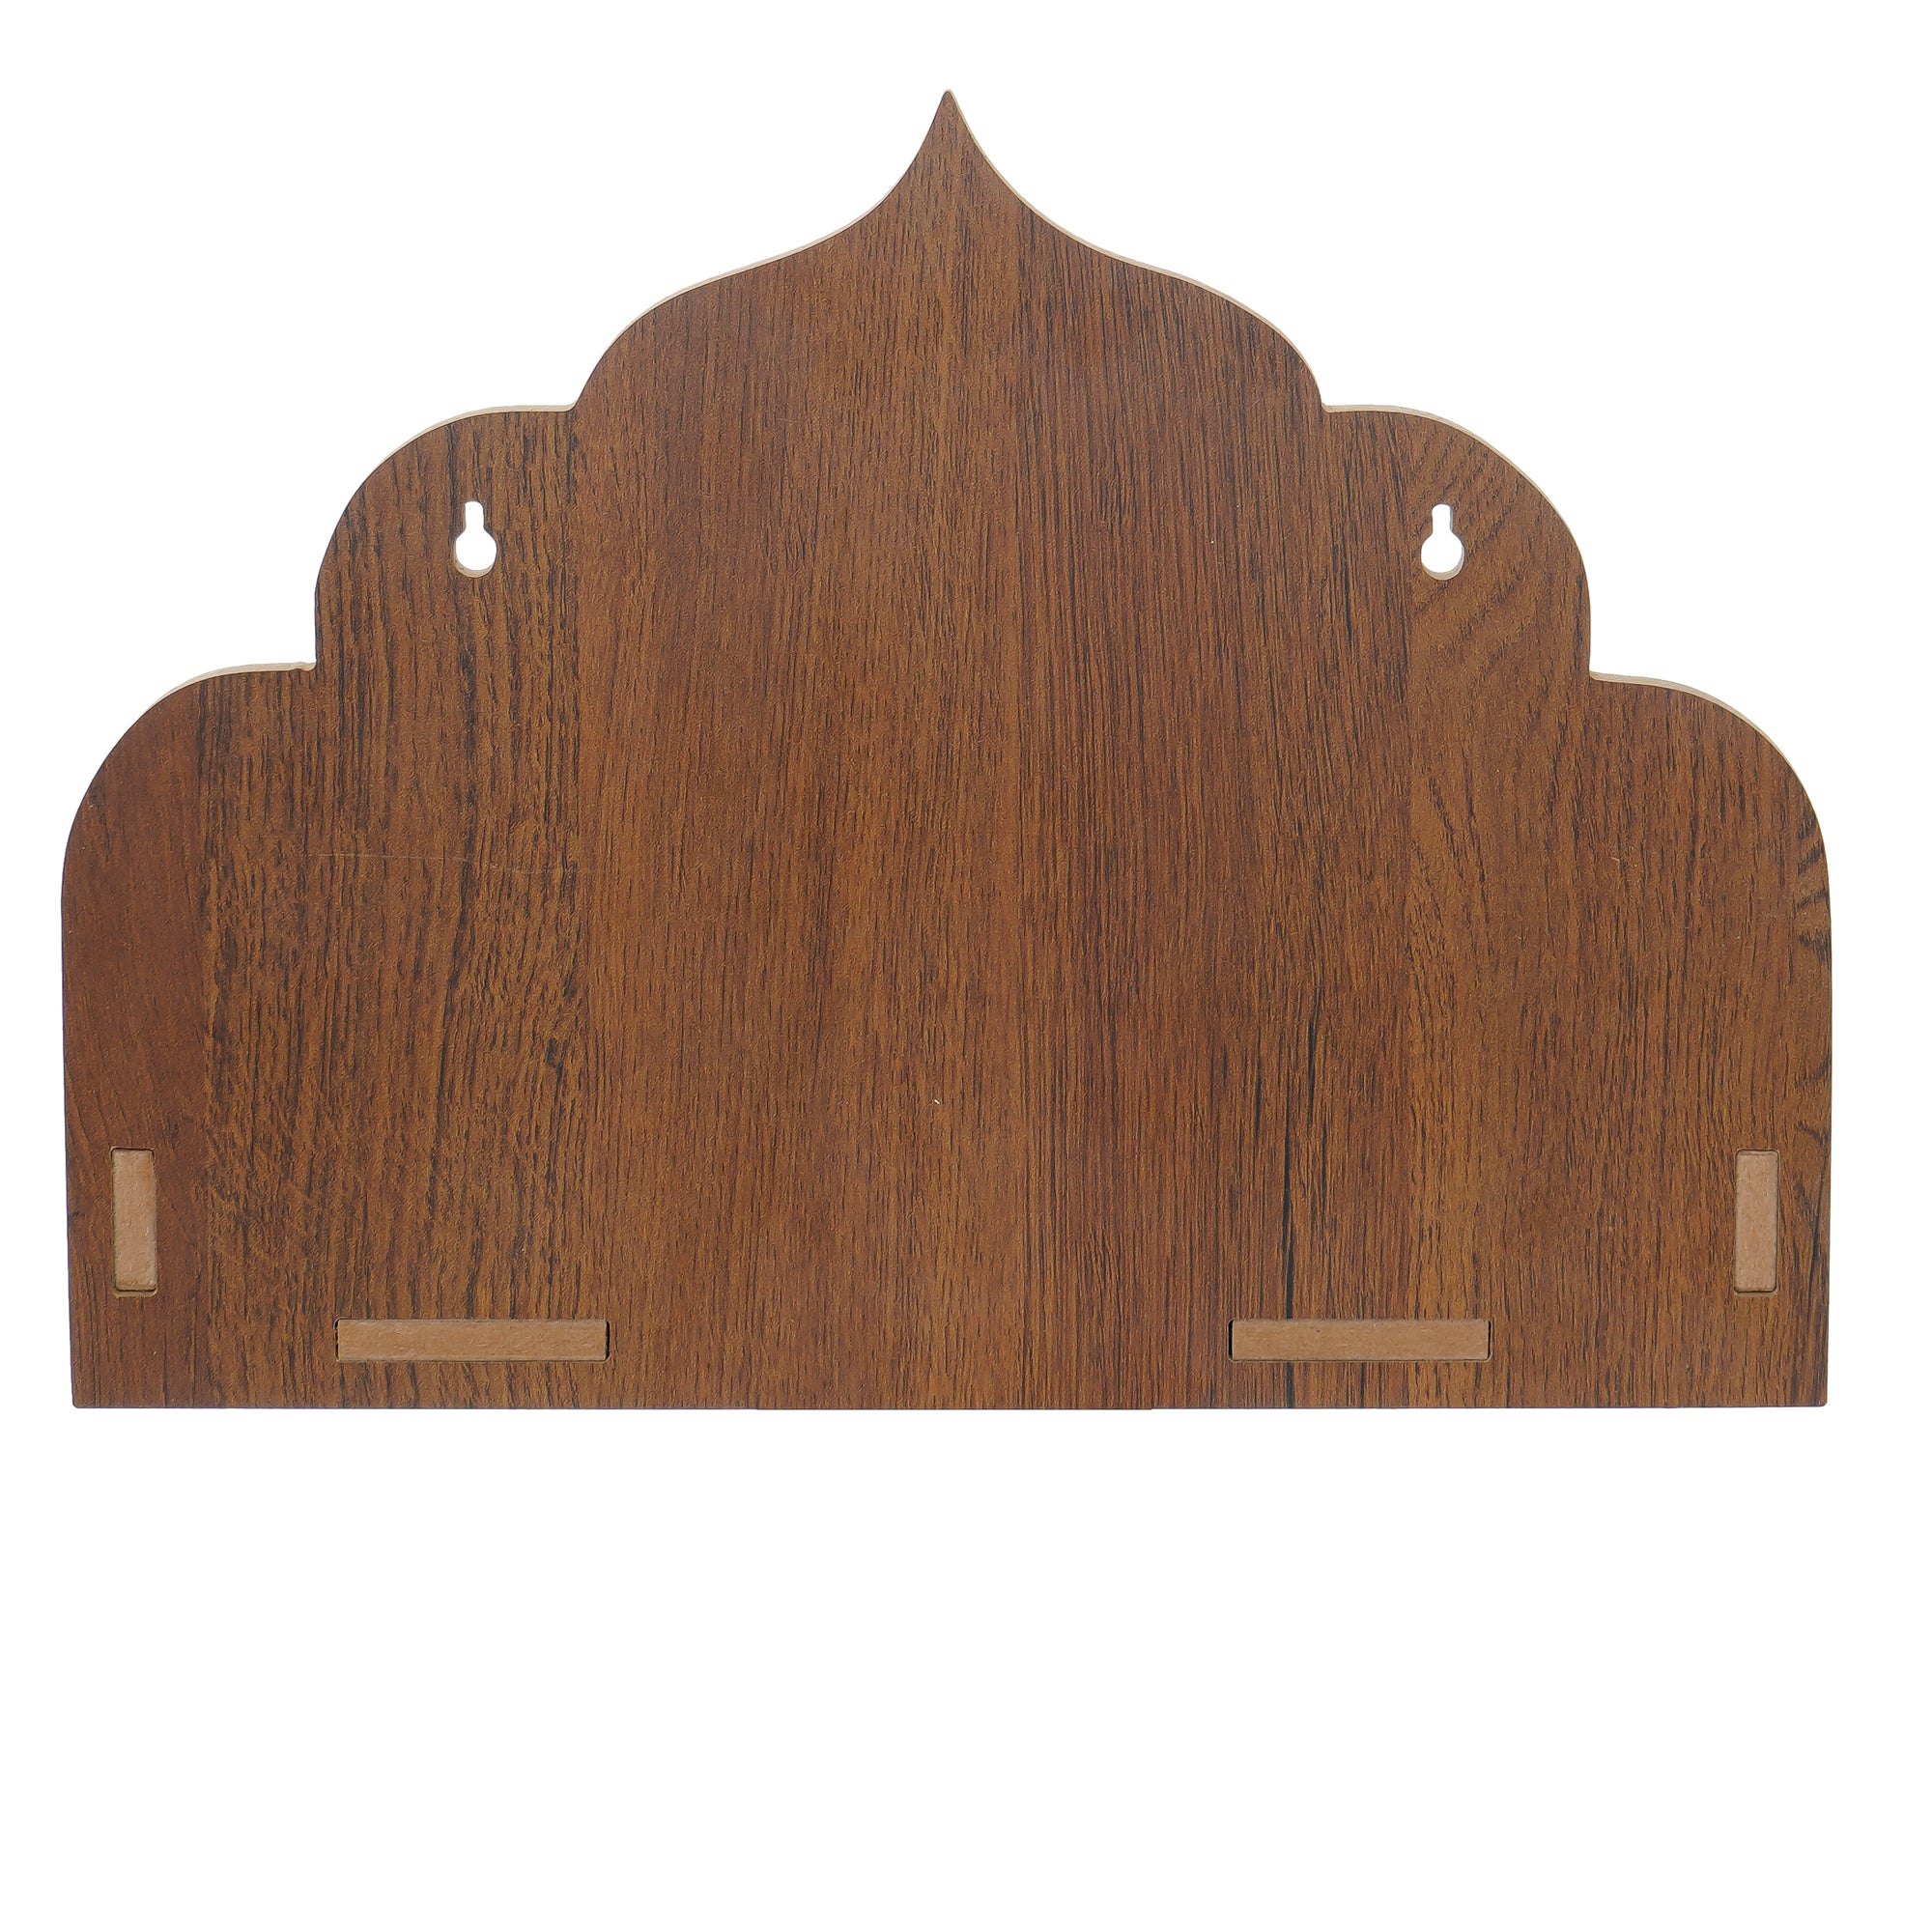 Designer Laminated Wood Pooja Temple/Mandir 6